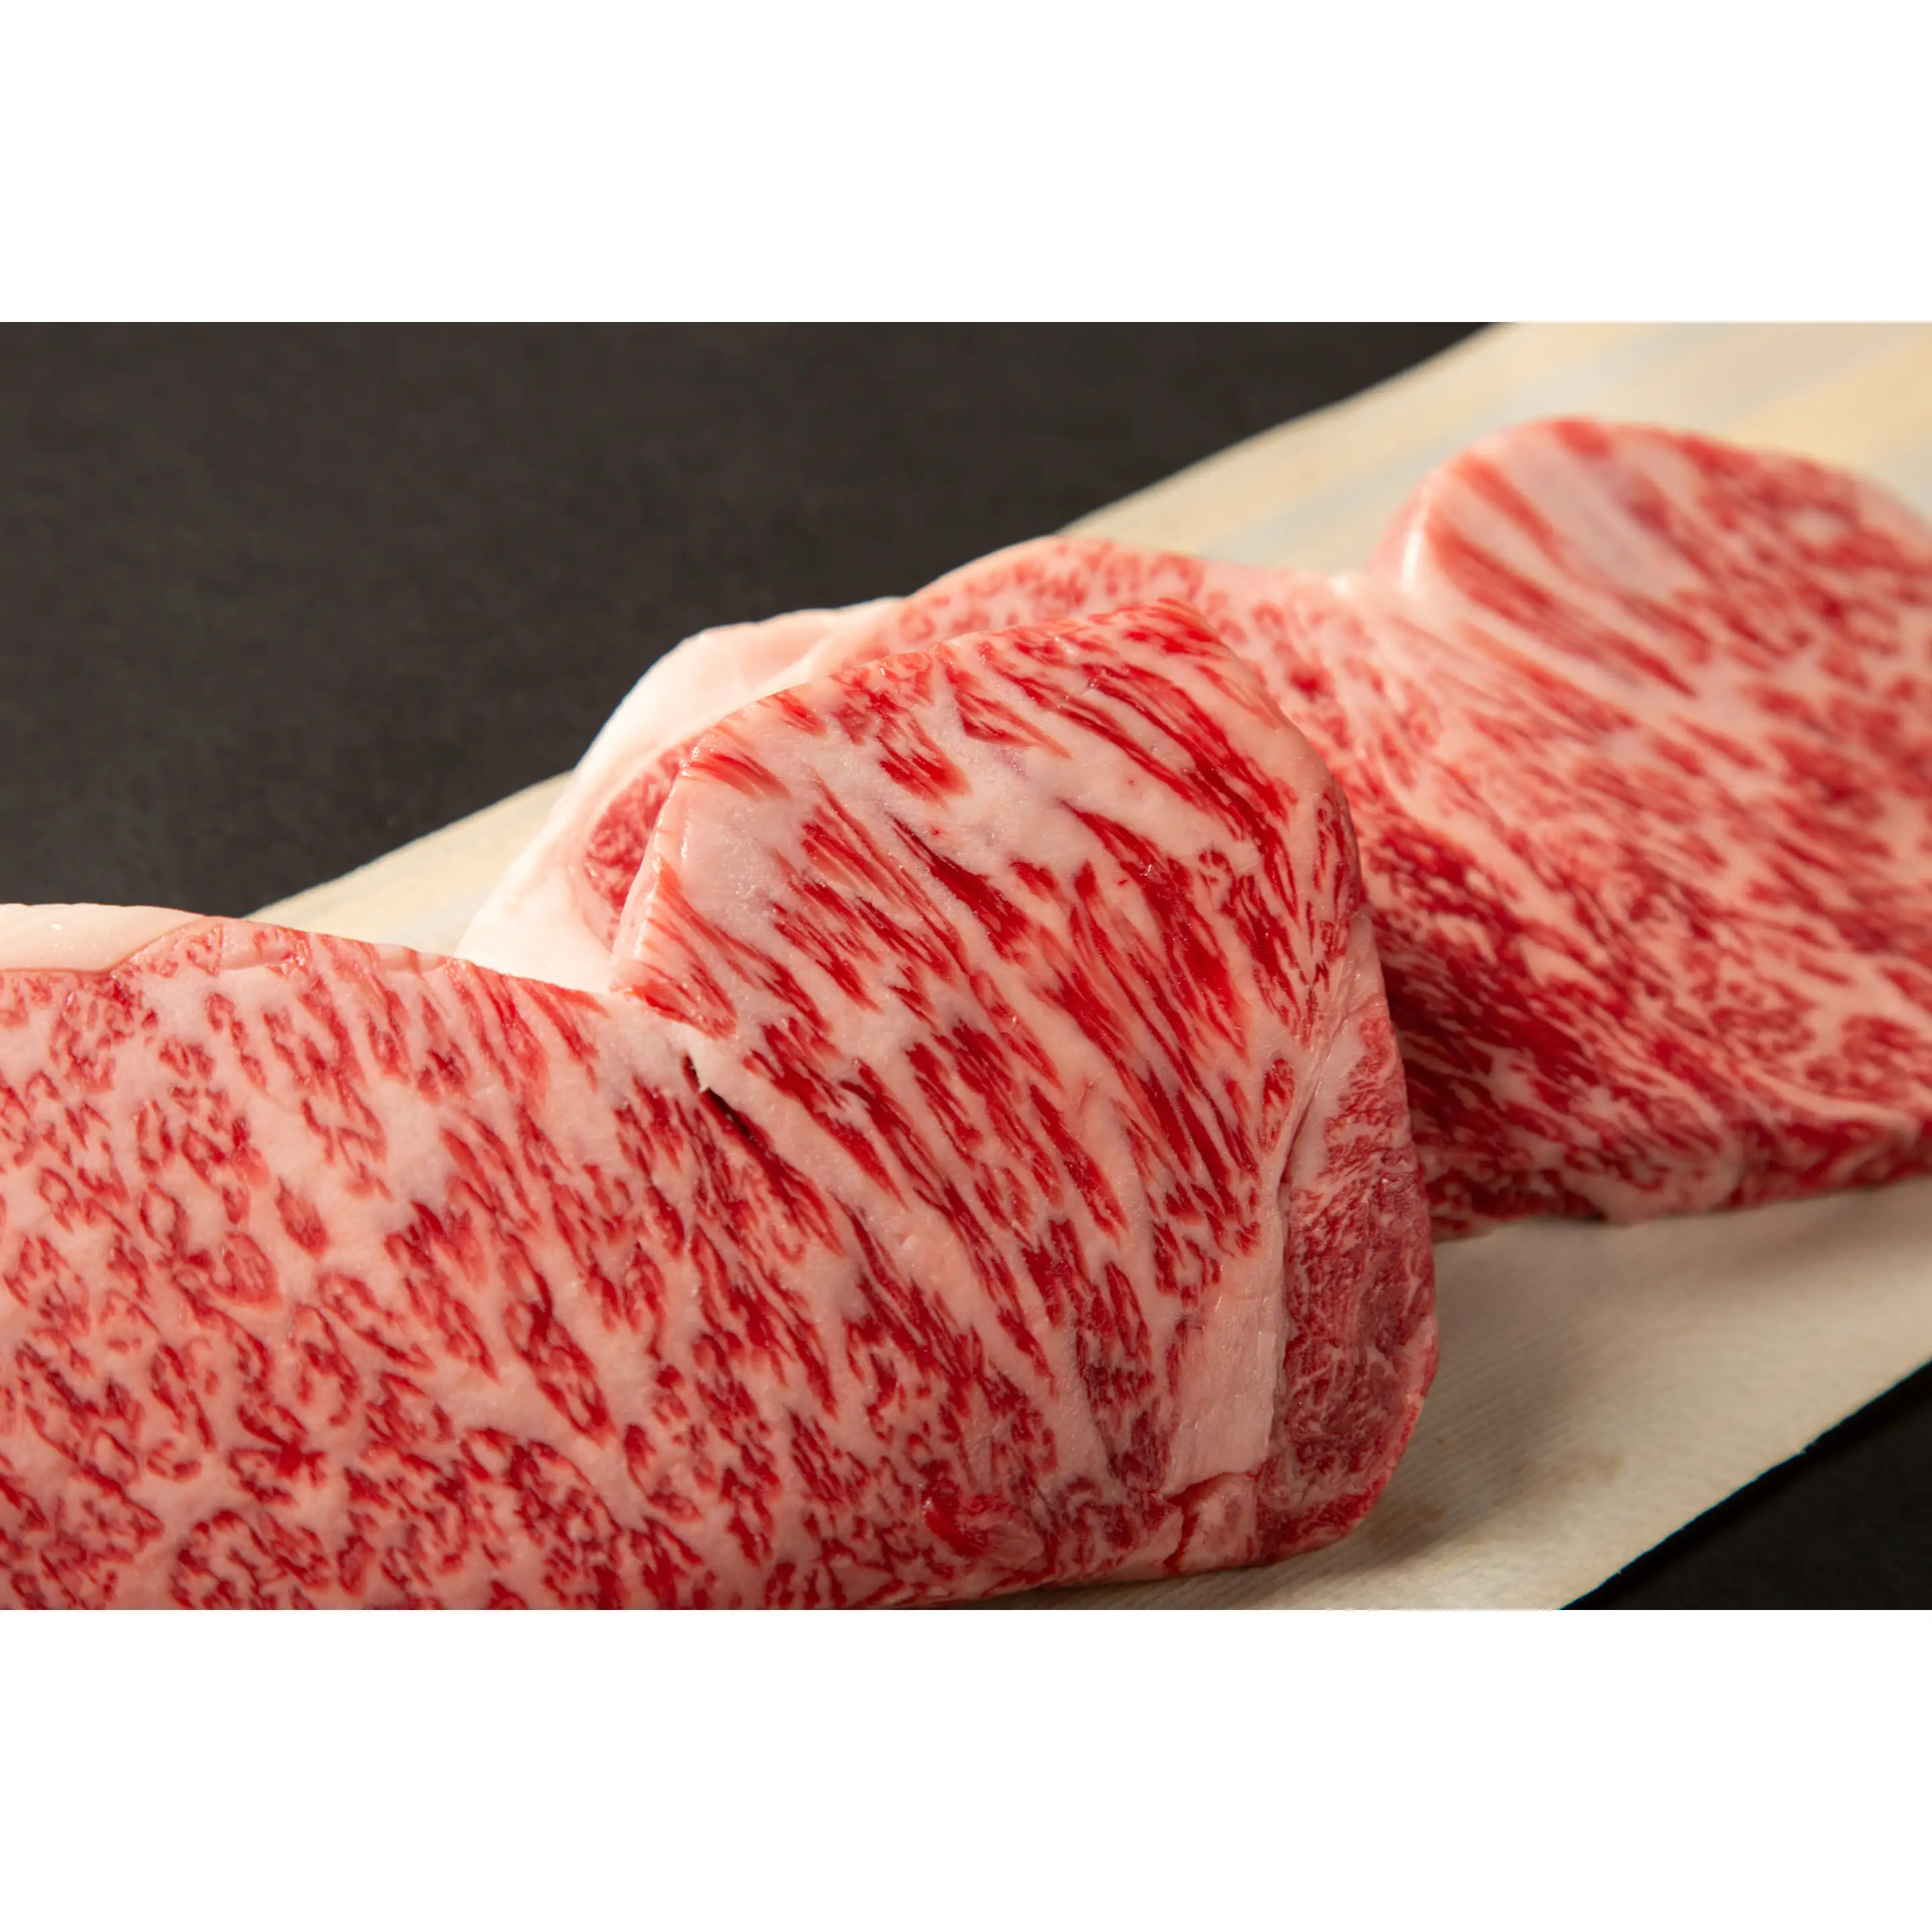 De Meest Populaire Groothandel Grade A Hoge Kwaliteit Halal Bevroren Rundvlees Vlees Halal Beef Jerky Rundvlees Bevroren Vlees Van alle Onderdelen